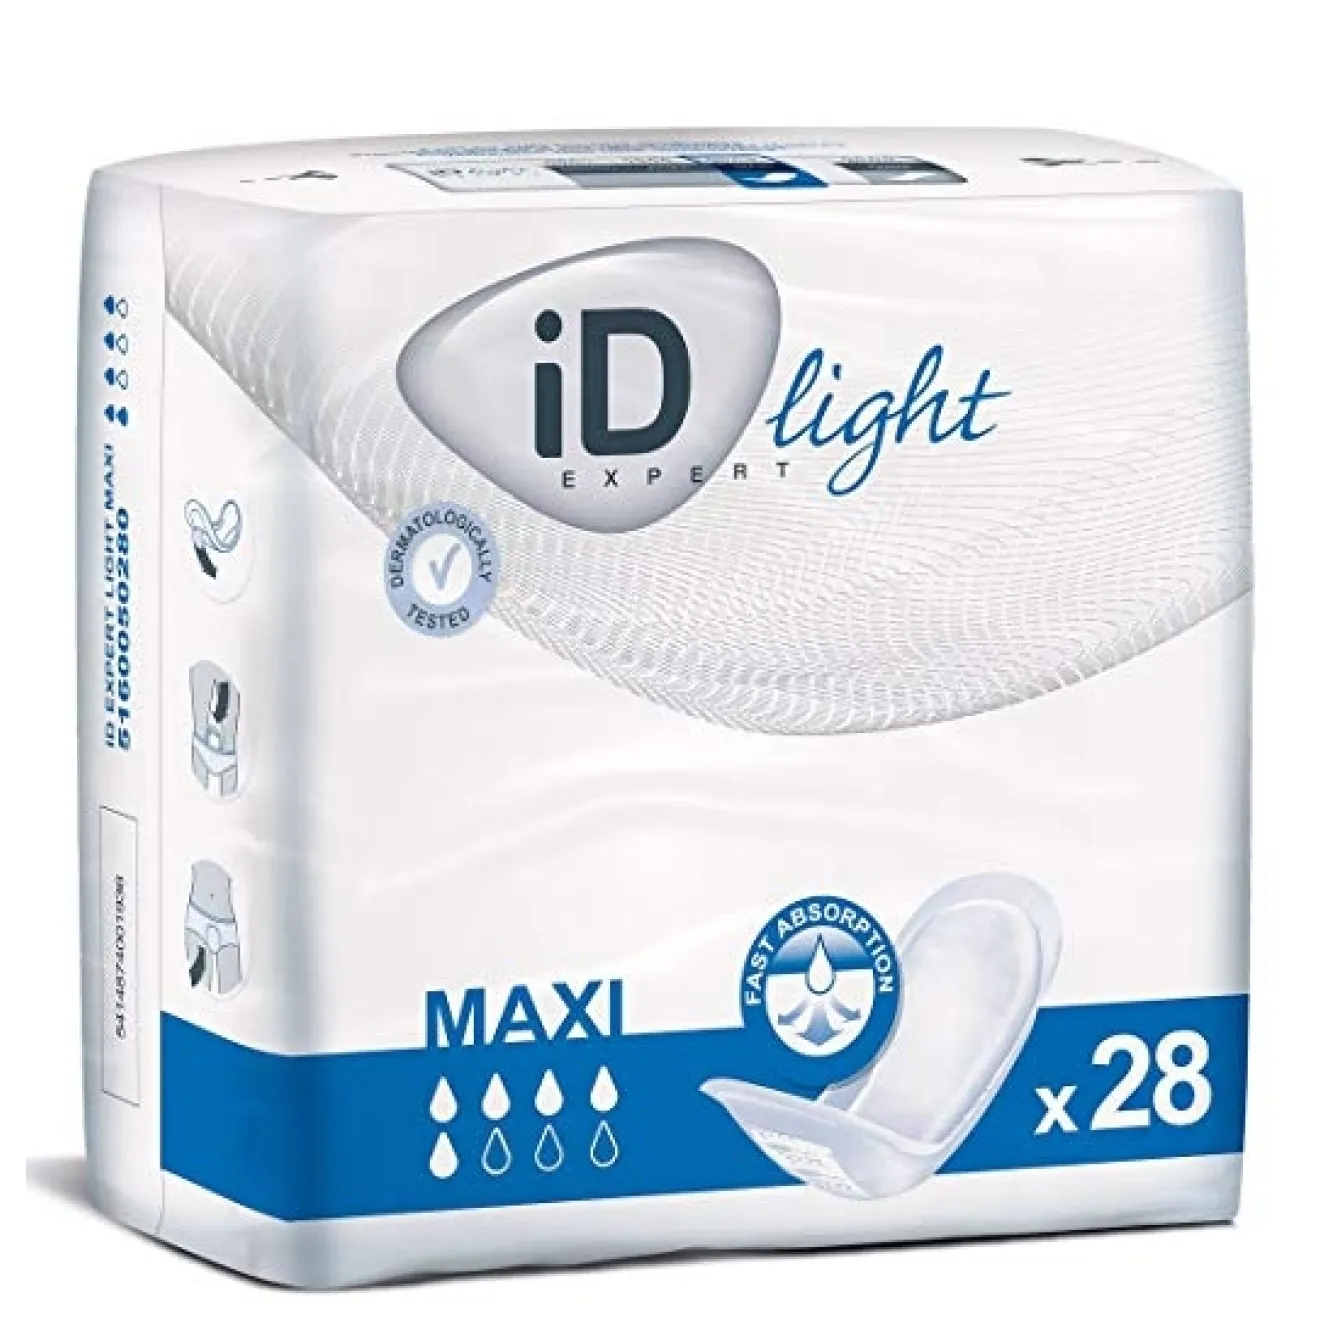 ID Expert light maxi 6x28 ST